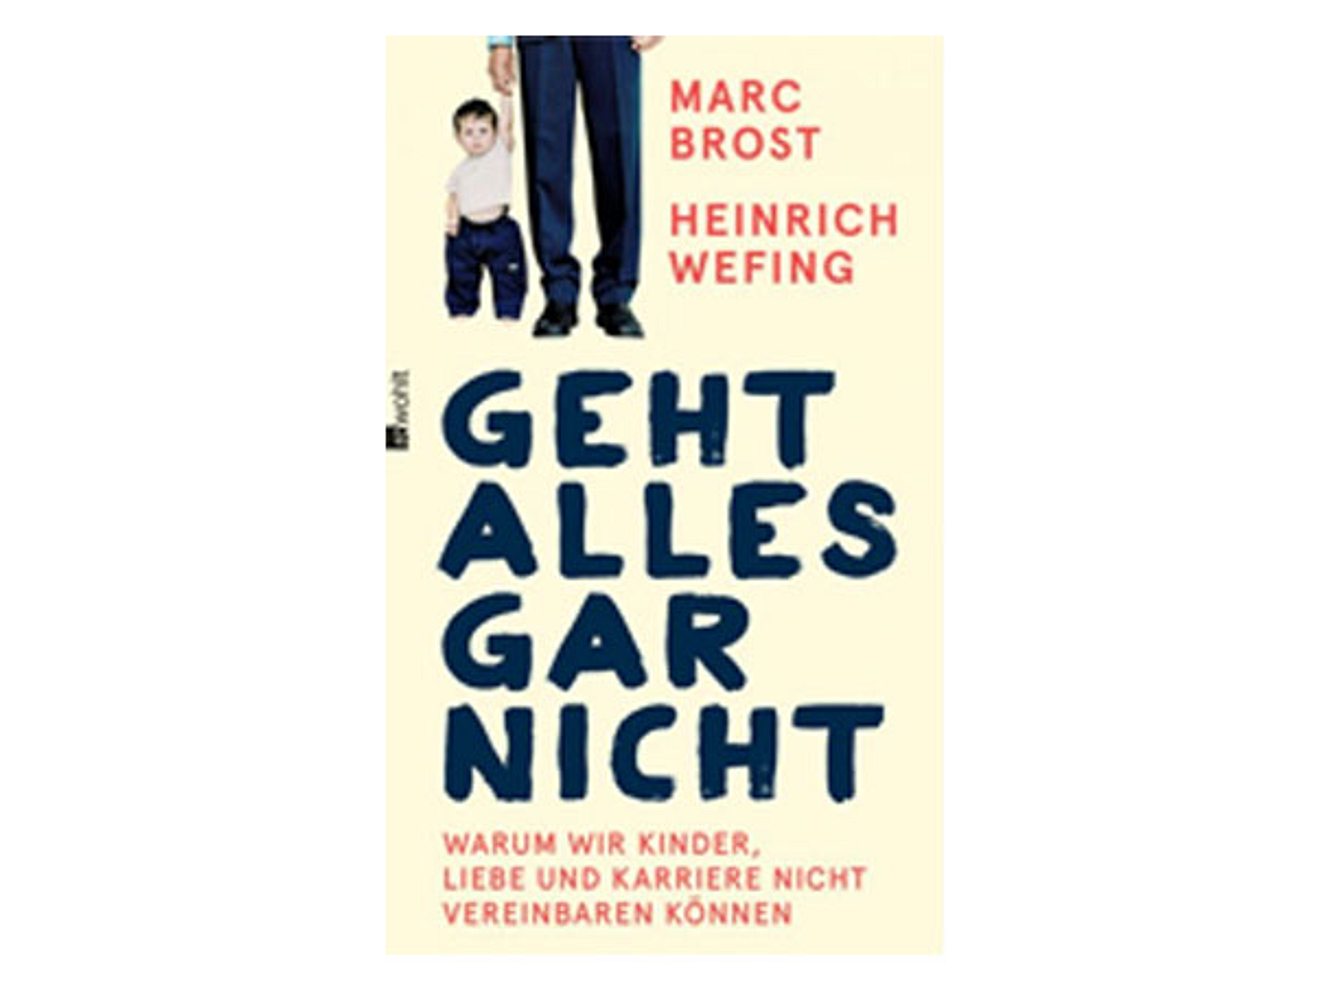 Geht alles gar nicht: Das Buch von Heinrich Wefing und Marc Brost ist ein Hilferuf von Vätern, die mit der Vereinbarkeit von Familie und Beruf kämpfen.